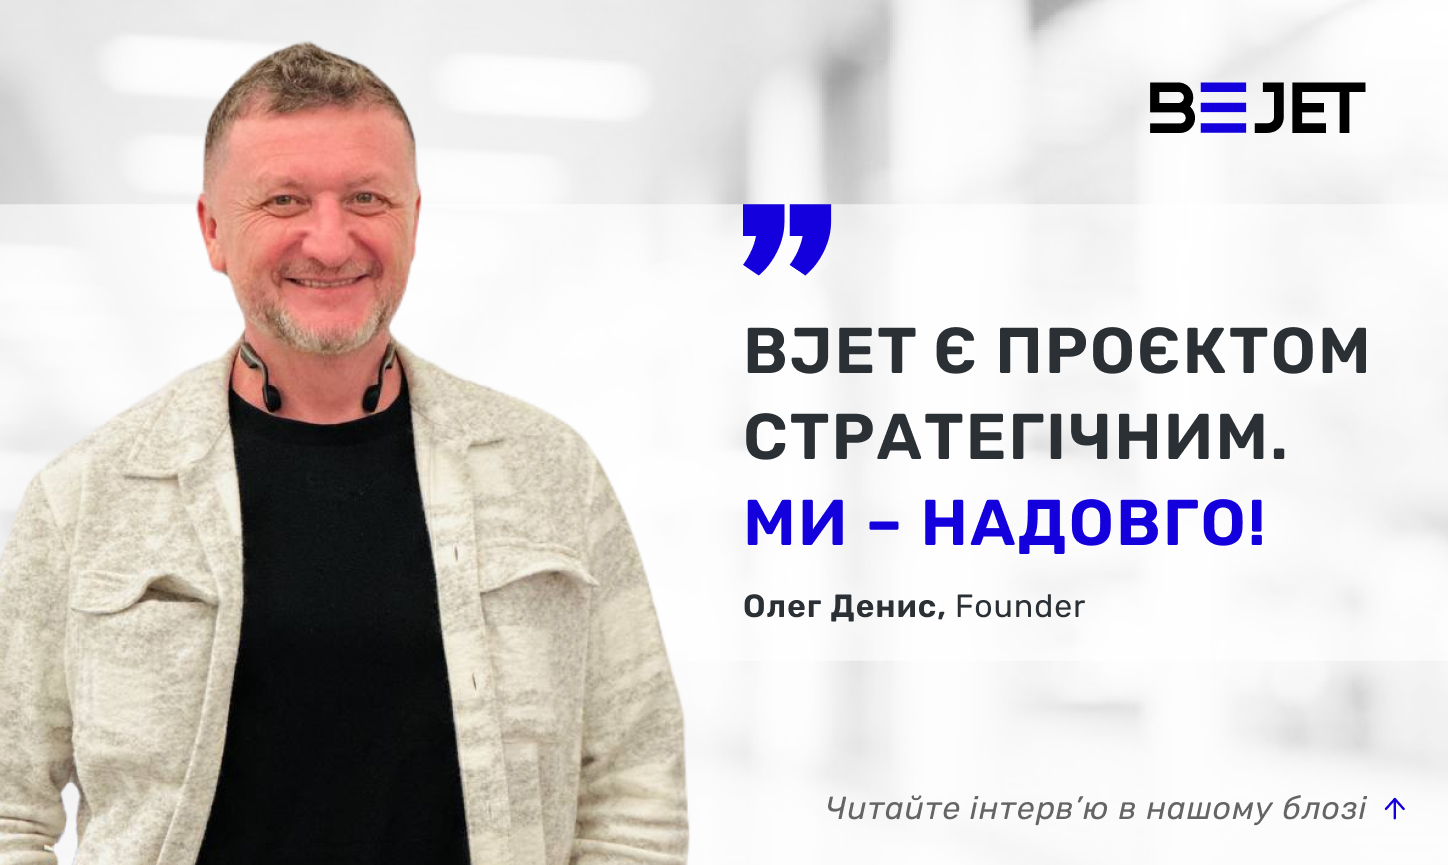 Олег Денис, засновник BJet